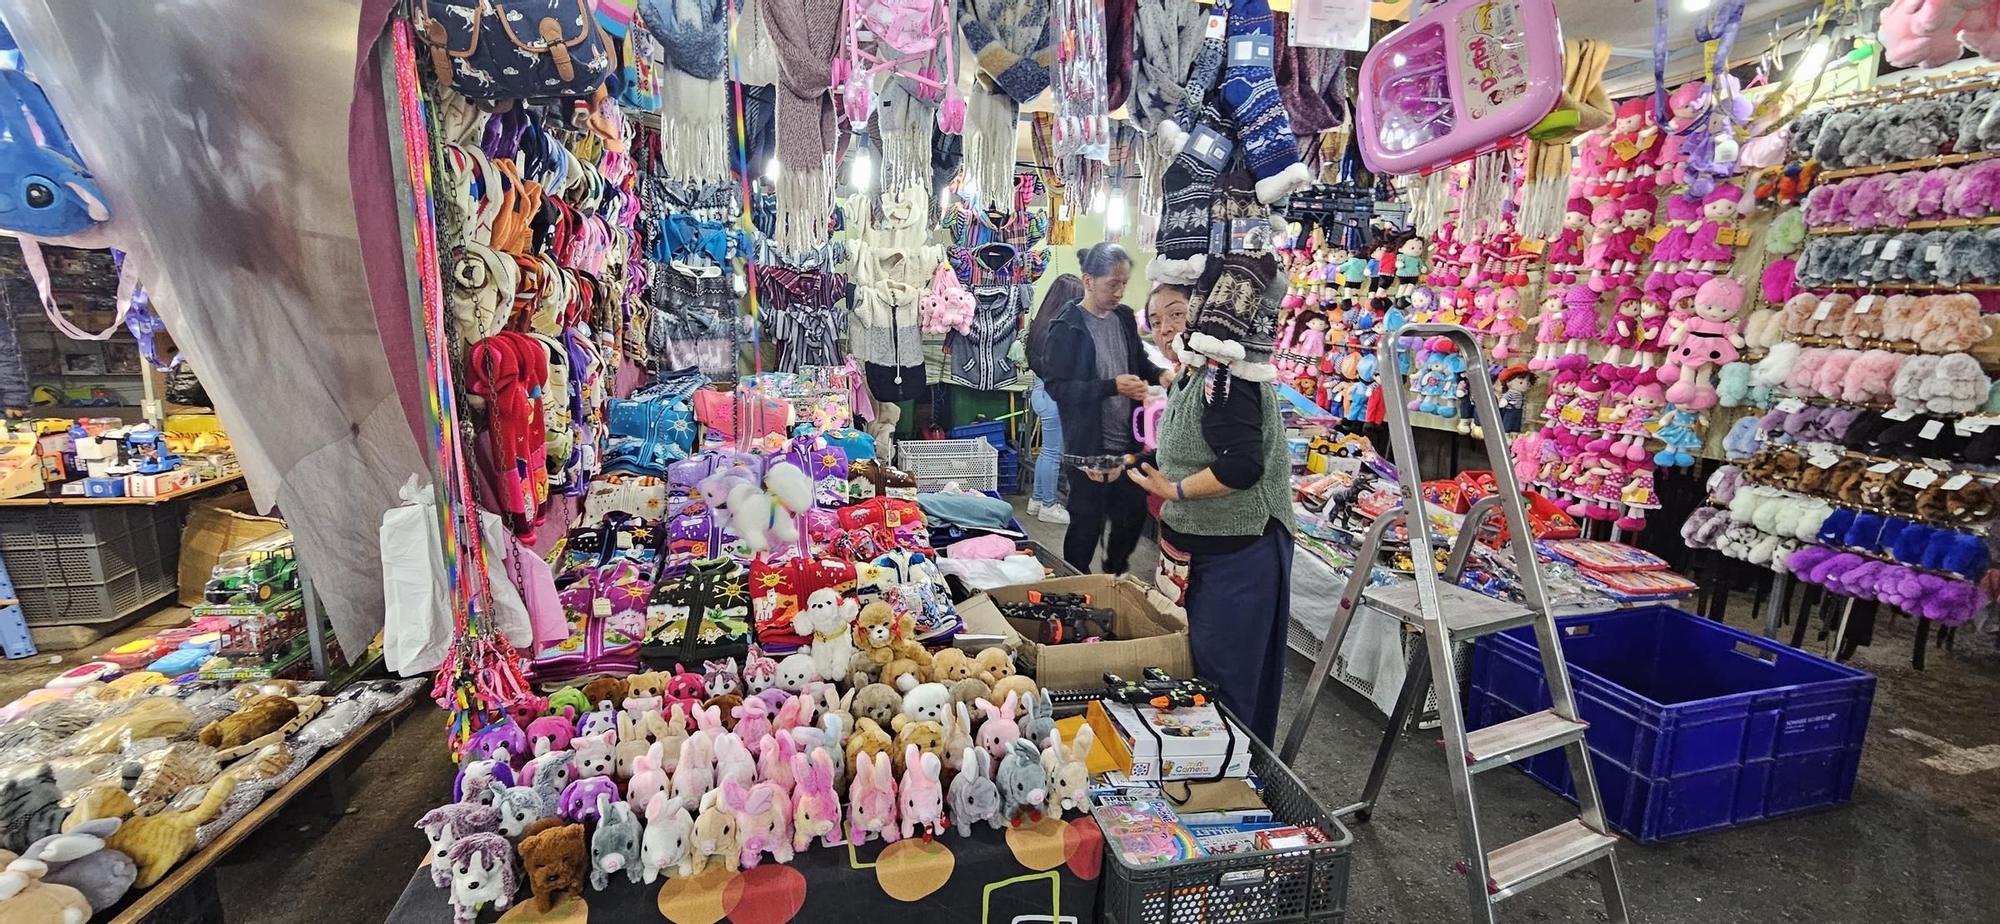 Así es el mercado de Reyes Magos en las noches del Cabanyal